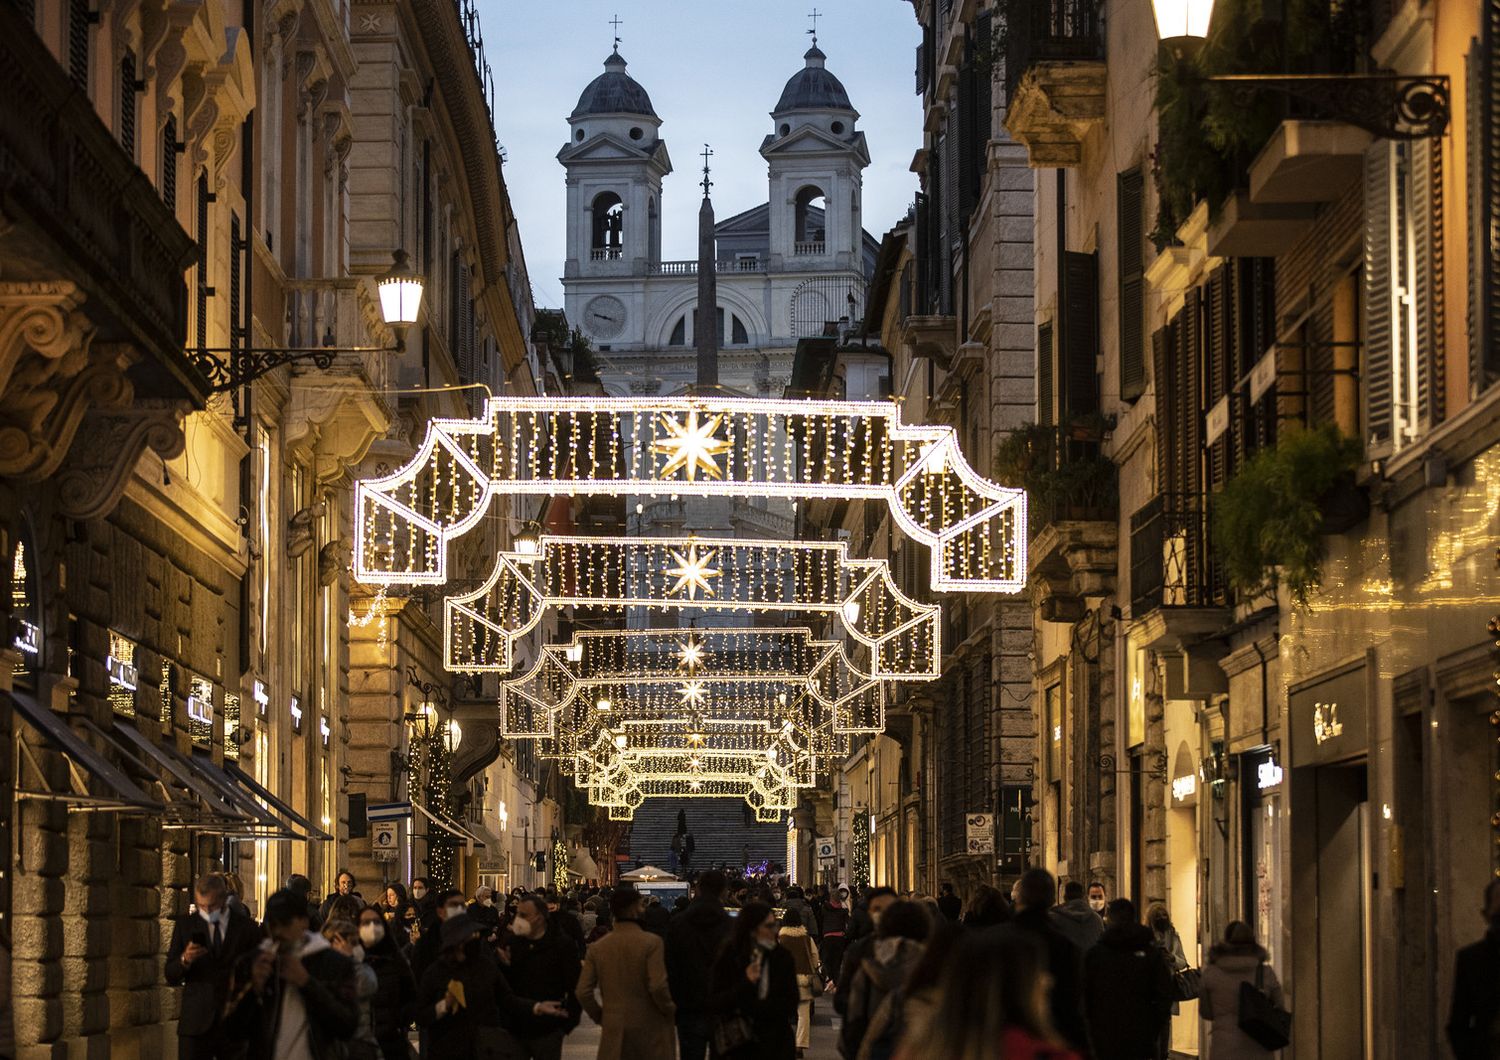 Gli assembramenti per lo shopping di Natale nelle strade del centro di Roma